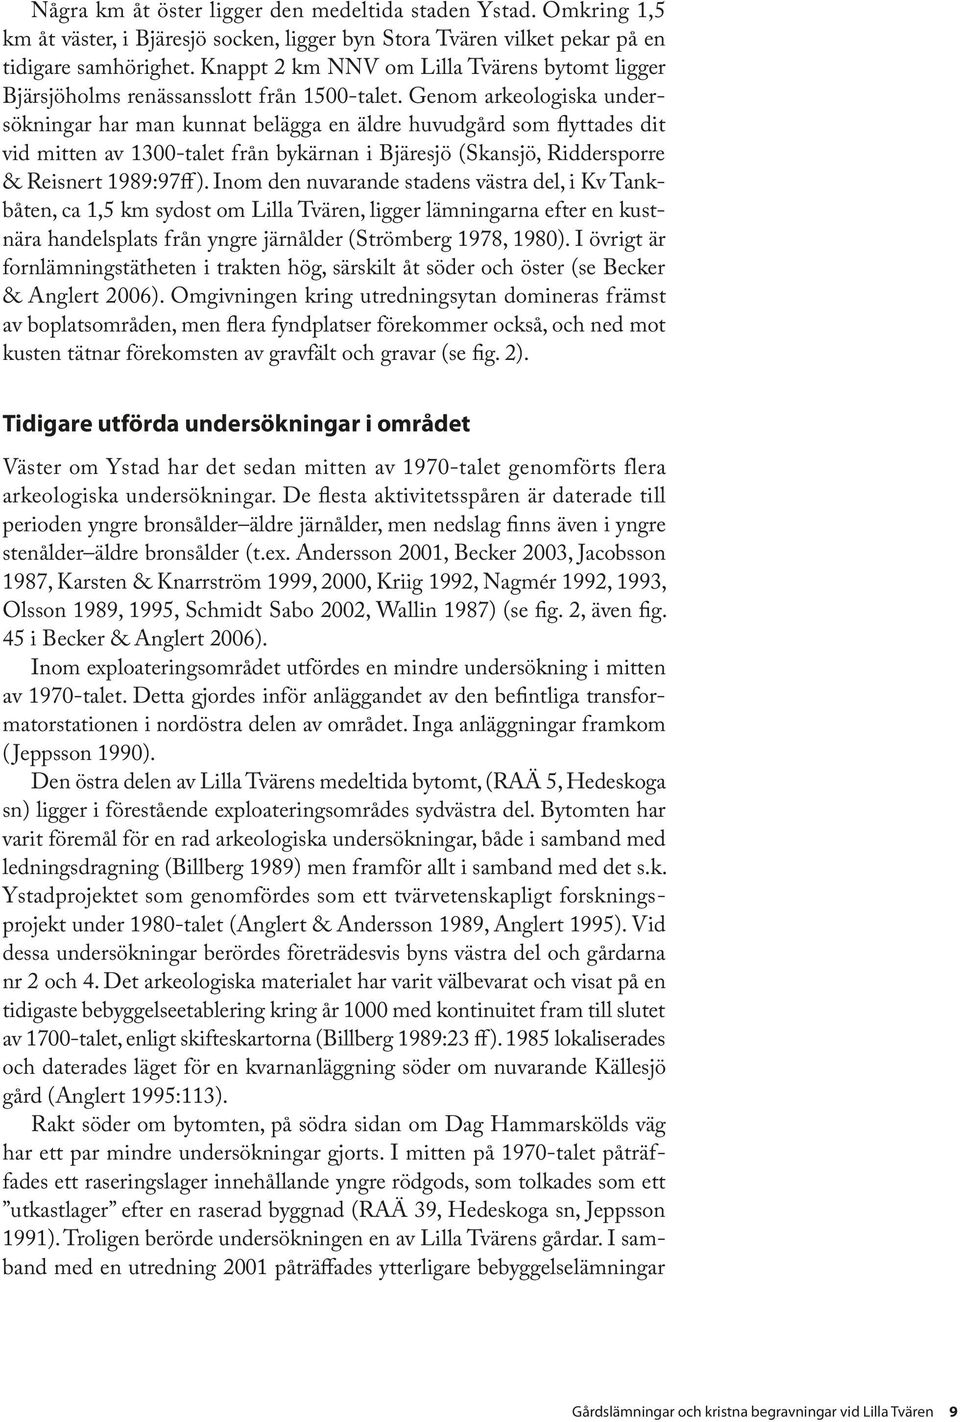 Genom arkeologiska undersökningar har man kunnat belägga en äldre huvudgård som flyttades dit vid mitten av 1300-talet från bykärnan i Bjäresjö (Skansjö, Riddersporre & Reisnert 1989:97ff ).